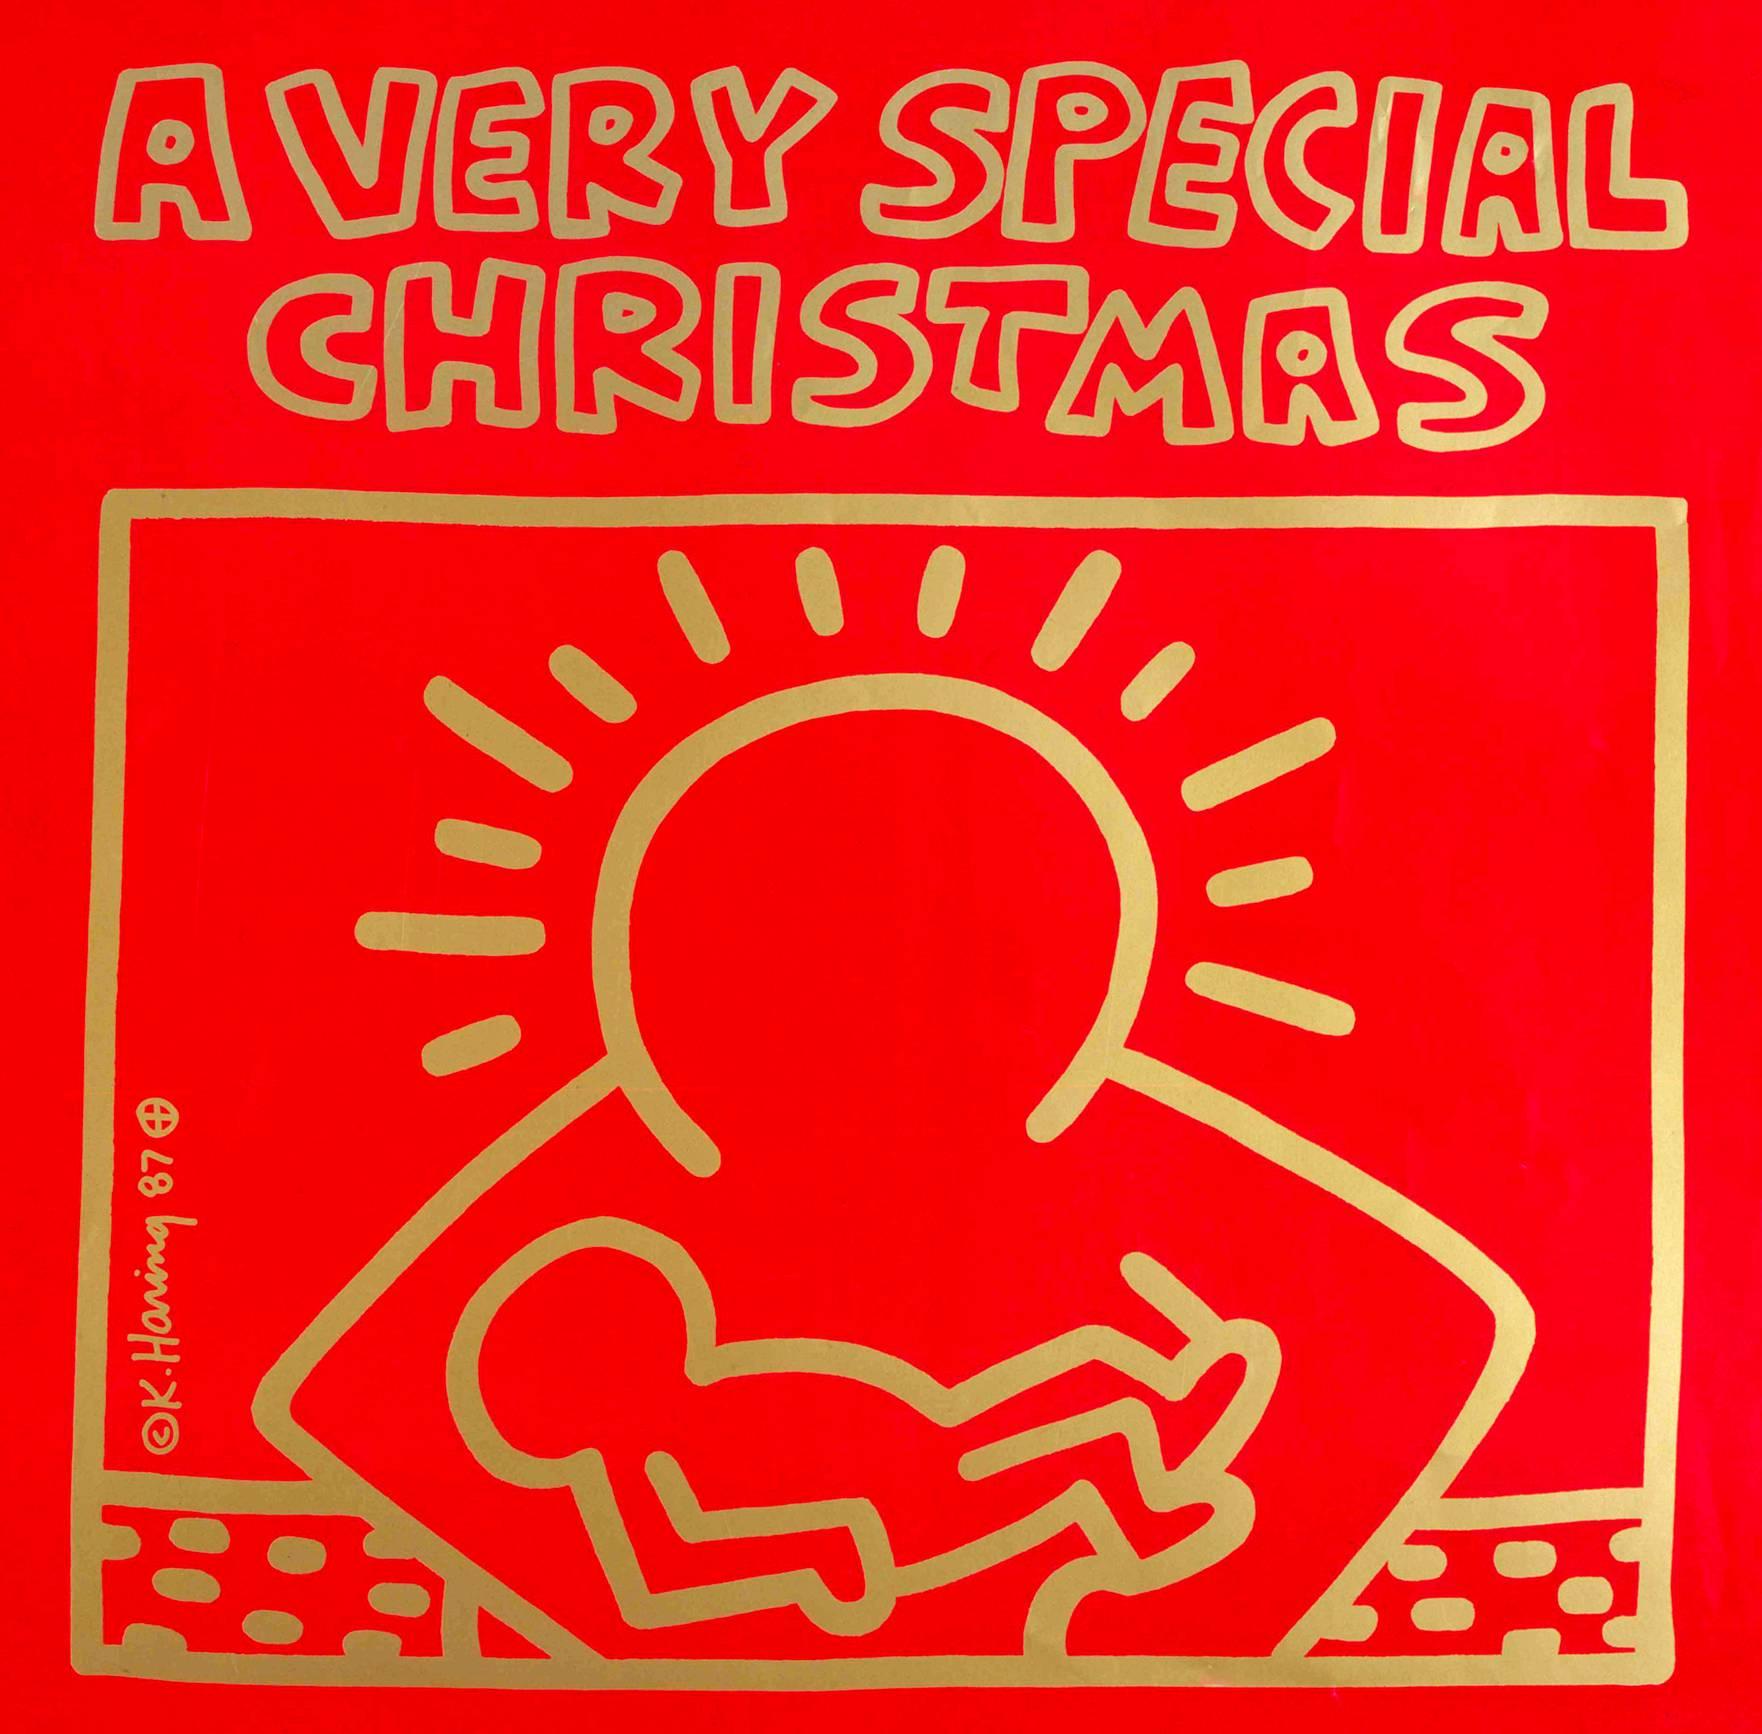 Original 1987 Vinyl-Schallplatte von Keith Haring:

Off-Set Lithographie auf Vinyl-Schallplattenhülle; gravierte Goldfolie.
12 x 12 Zoll.
Gedruckte Haring-Signatur in der Mitte unten links.

Insgesamt sehr guter Vintage-Zustand.

Enthält die